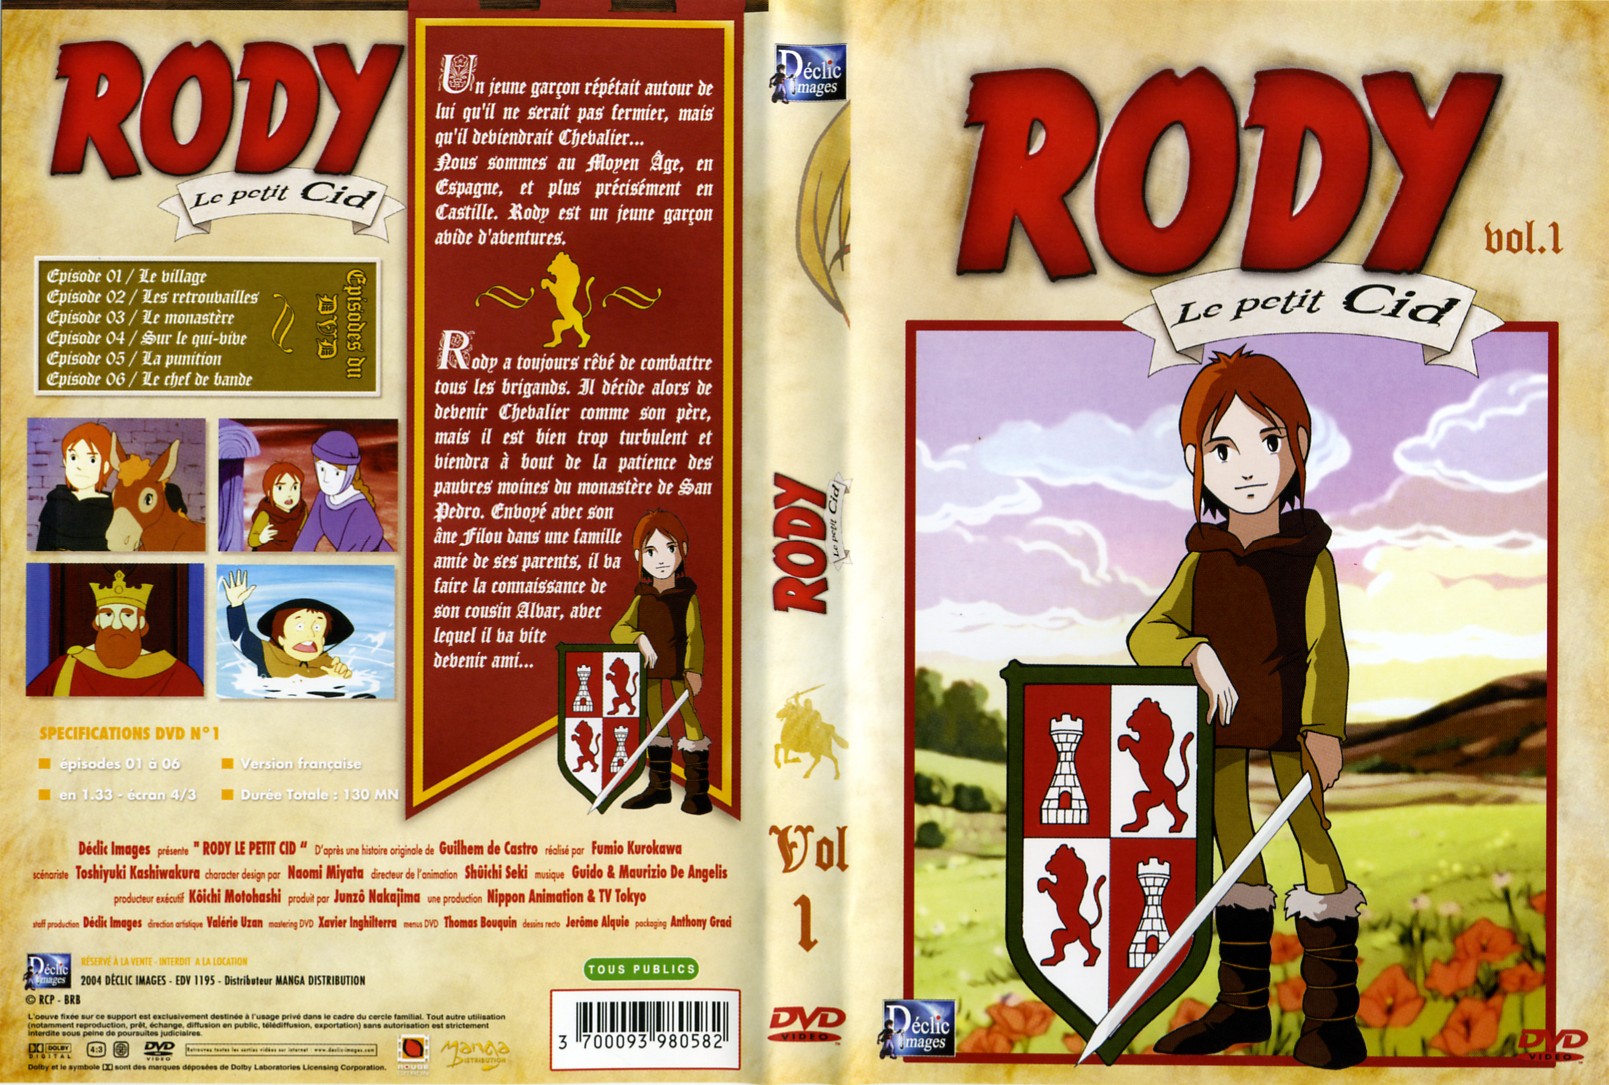 Jaquette DVD Rody le petit cid vol 1